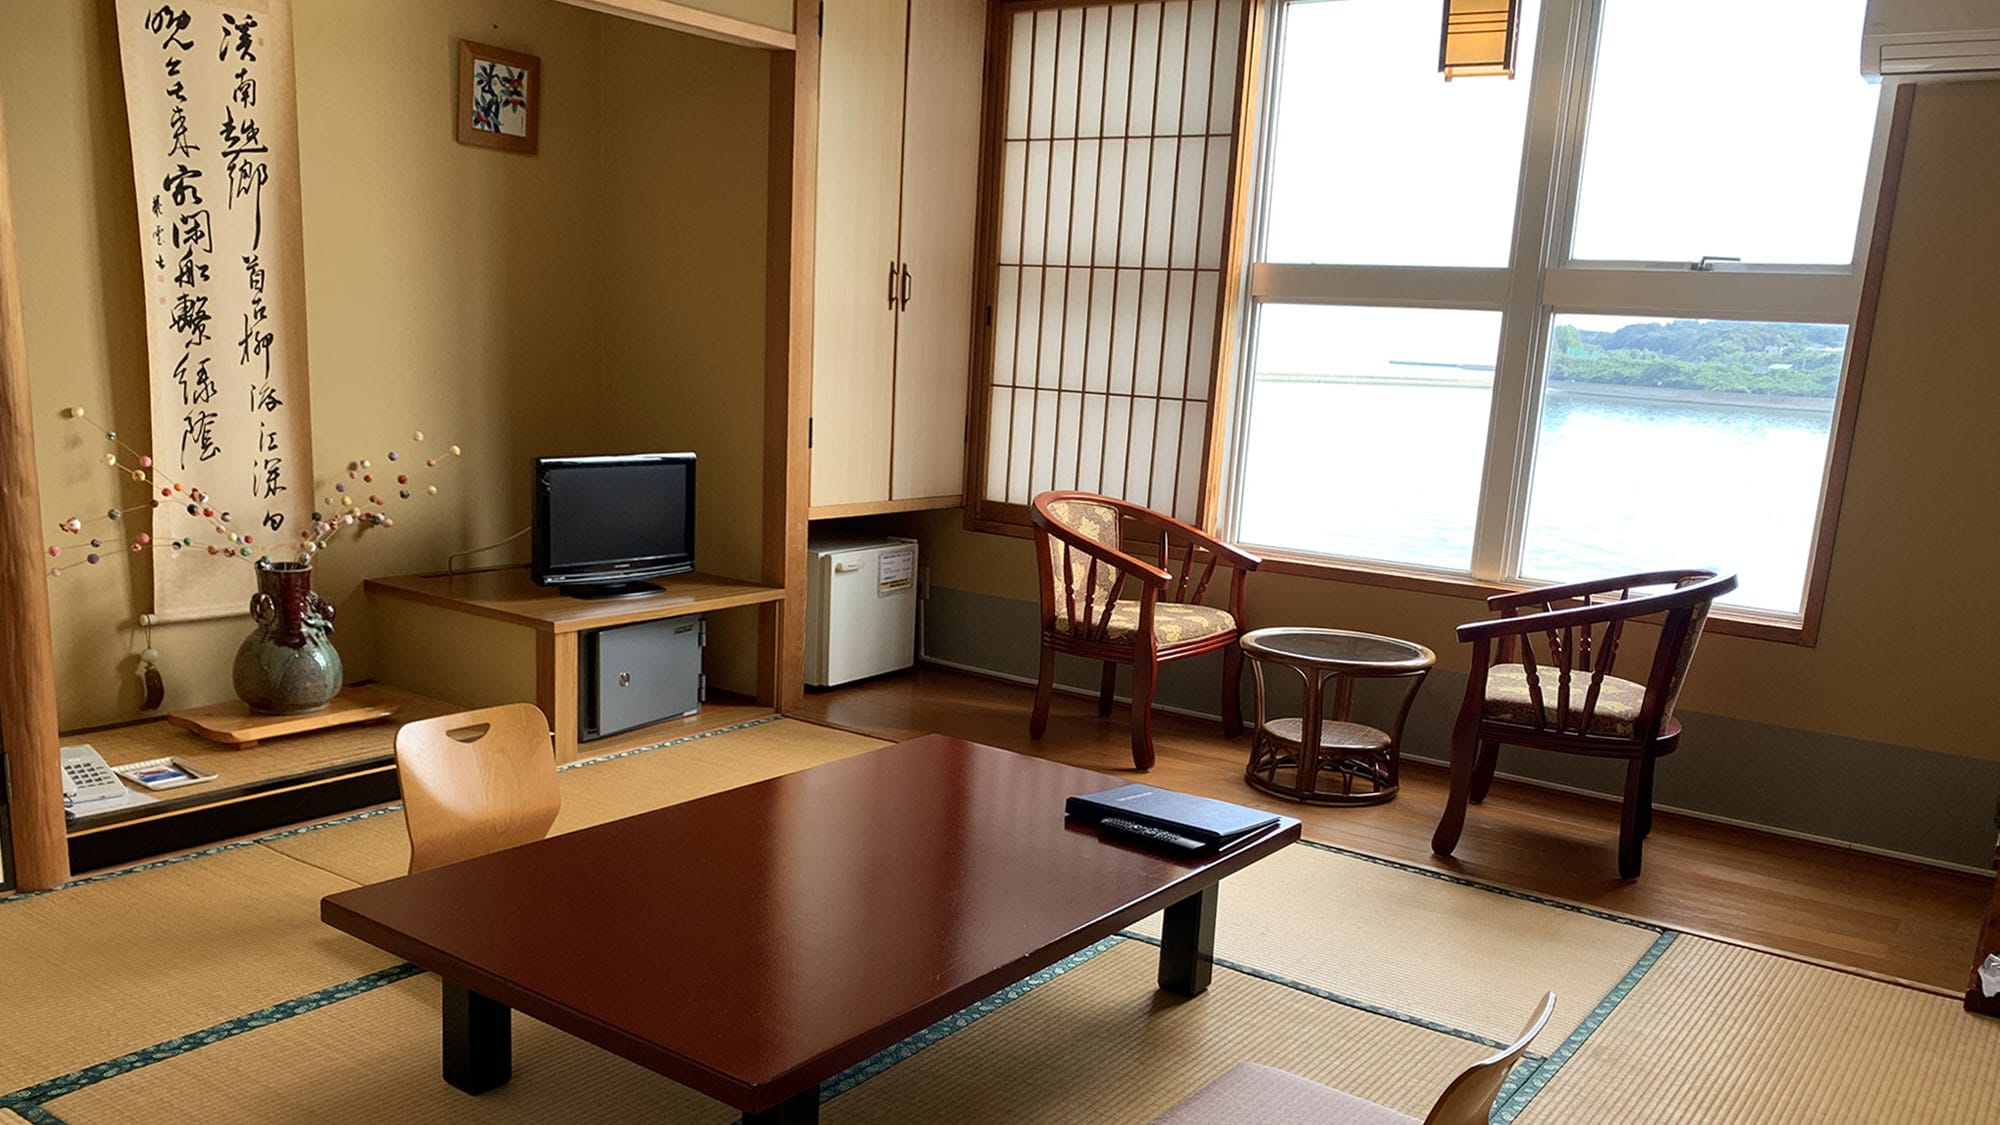 3F 风景优美的日式房间